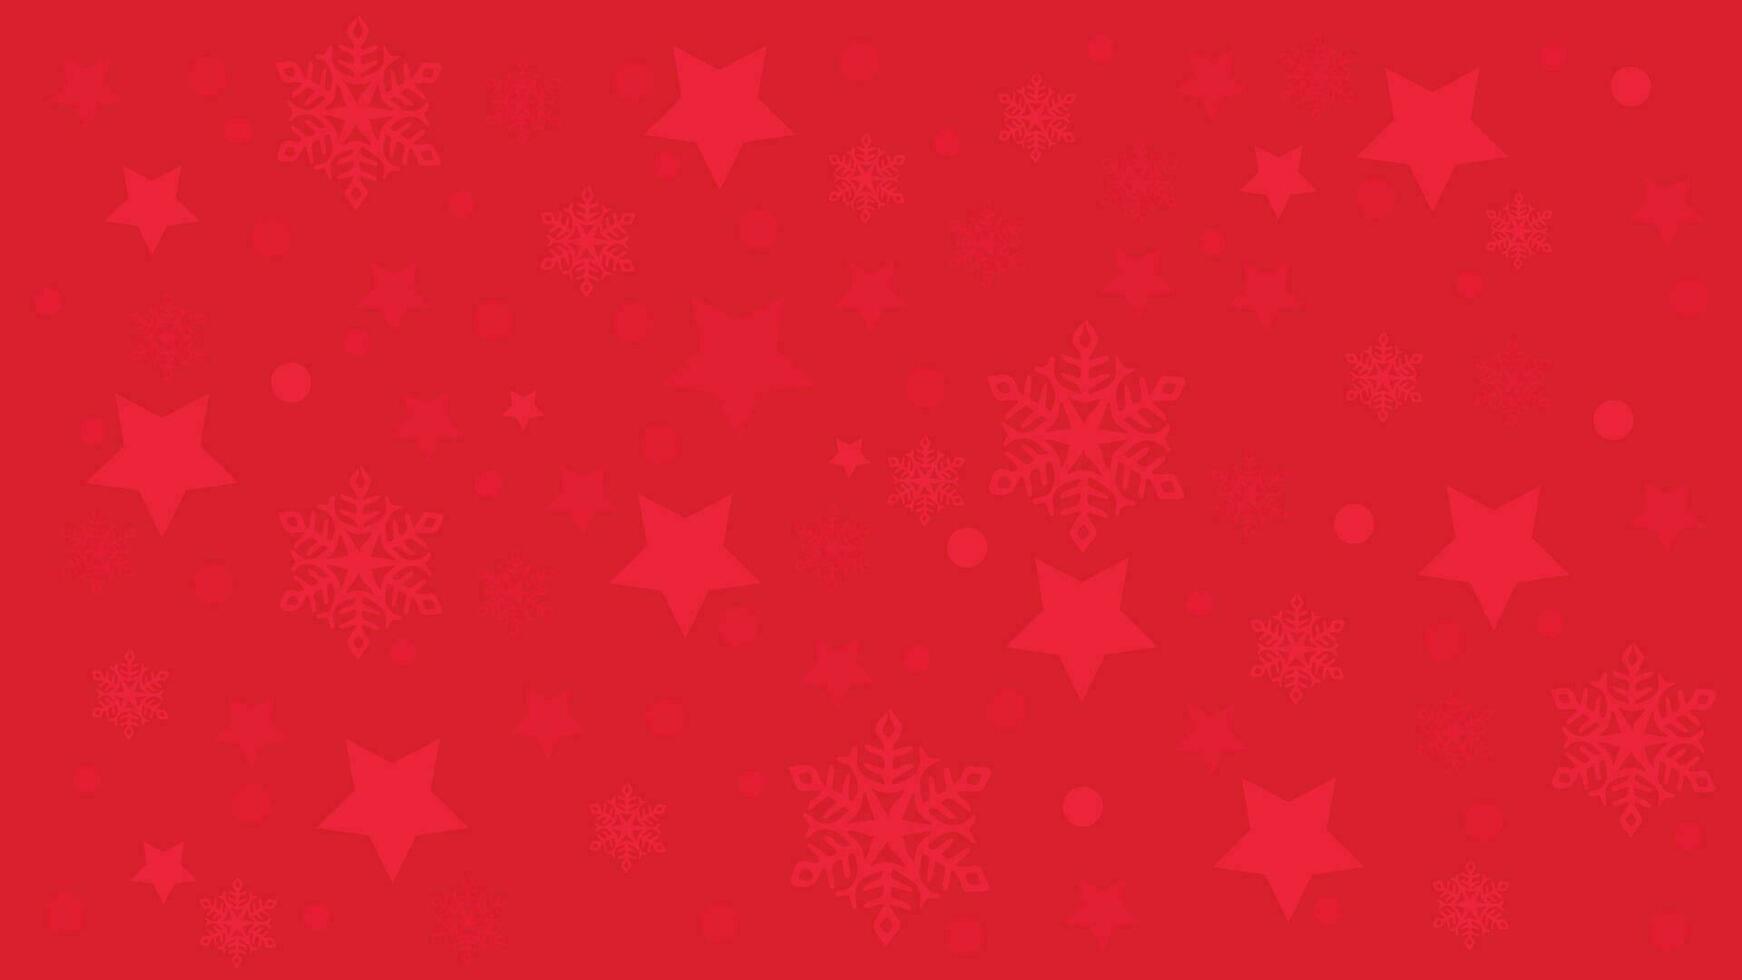 abstrakt jul bakgrund i röd och vit Färg kombination. du kan använda sig av detta snäll av bakgrund i din fest inbjudan projekt. vektor